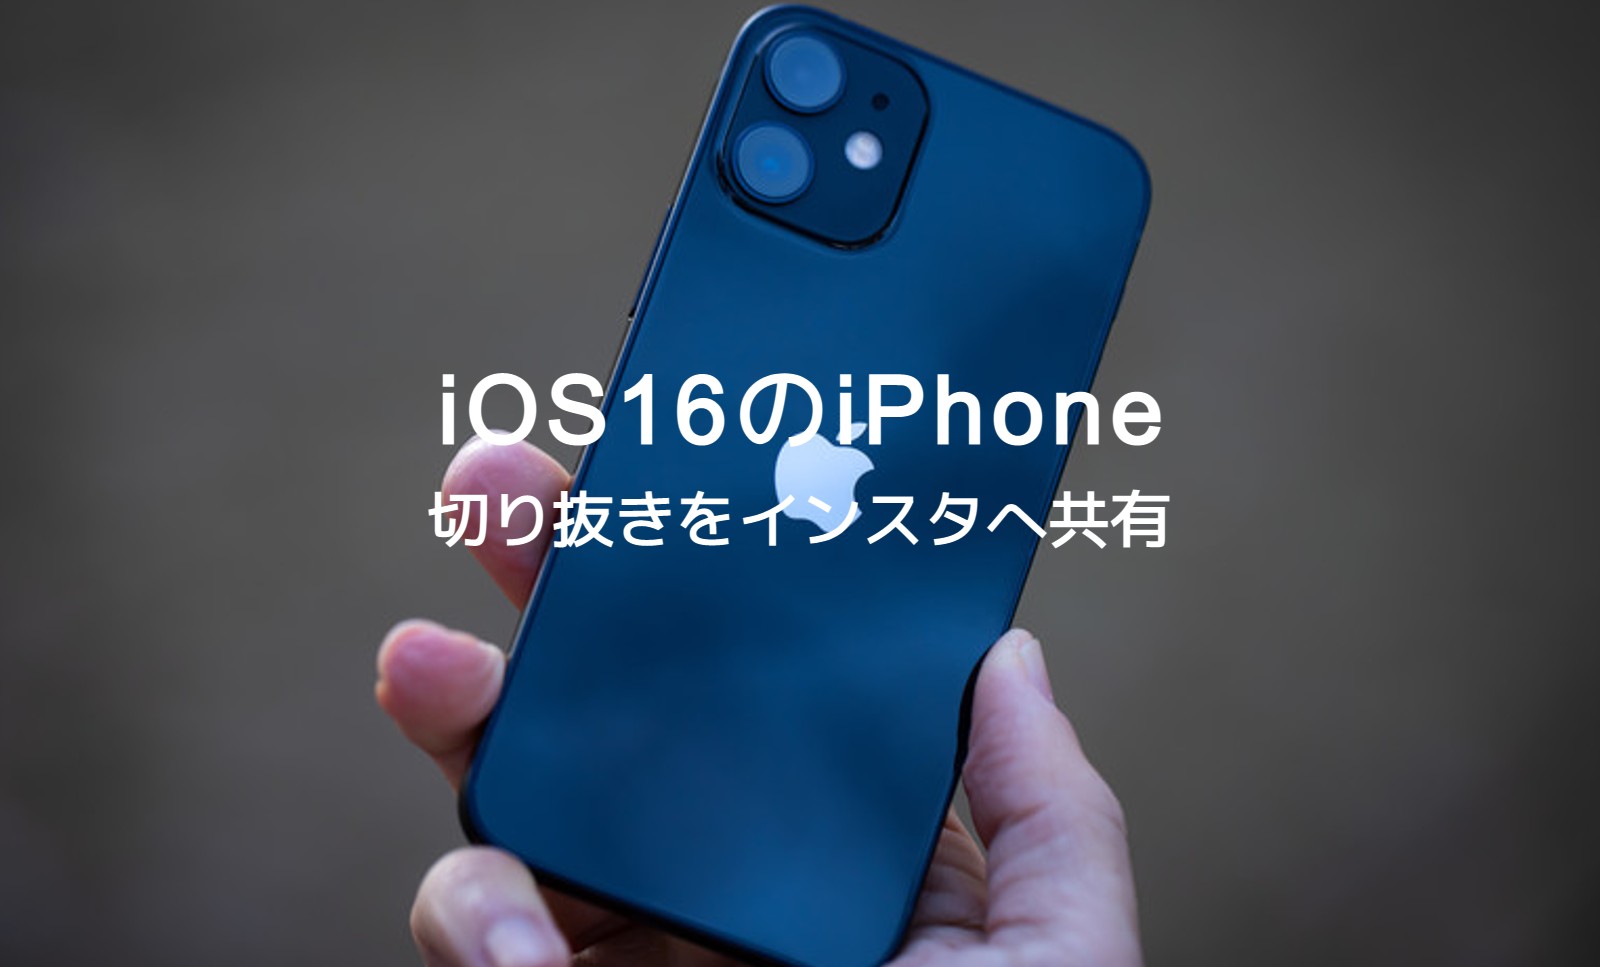 iOS17のiPhoneで写真を切り抜きしてインスタのストーリーや投稿に使うことはできる？のサムネイル画像